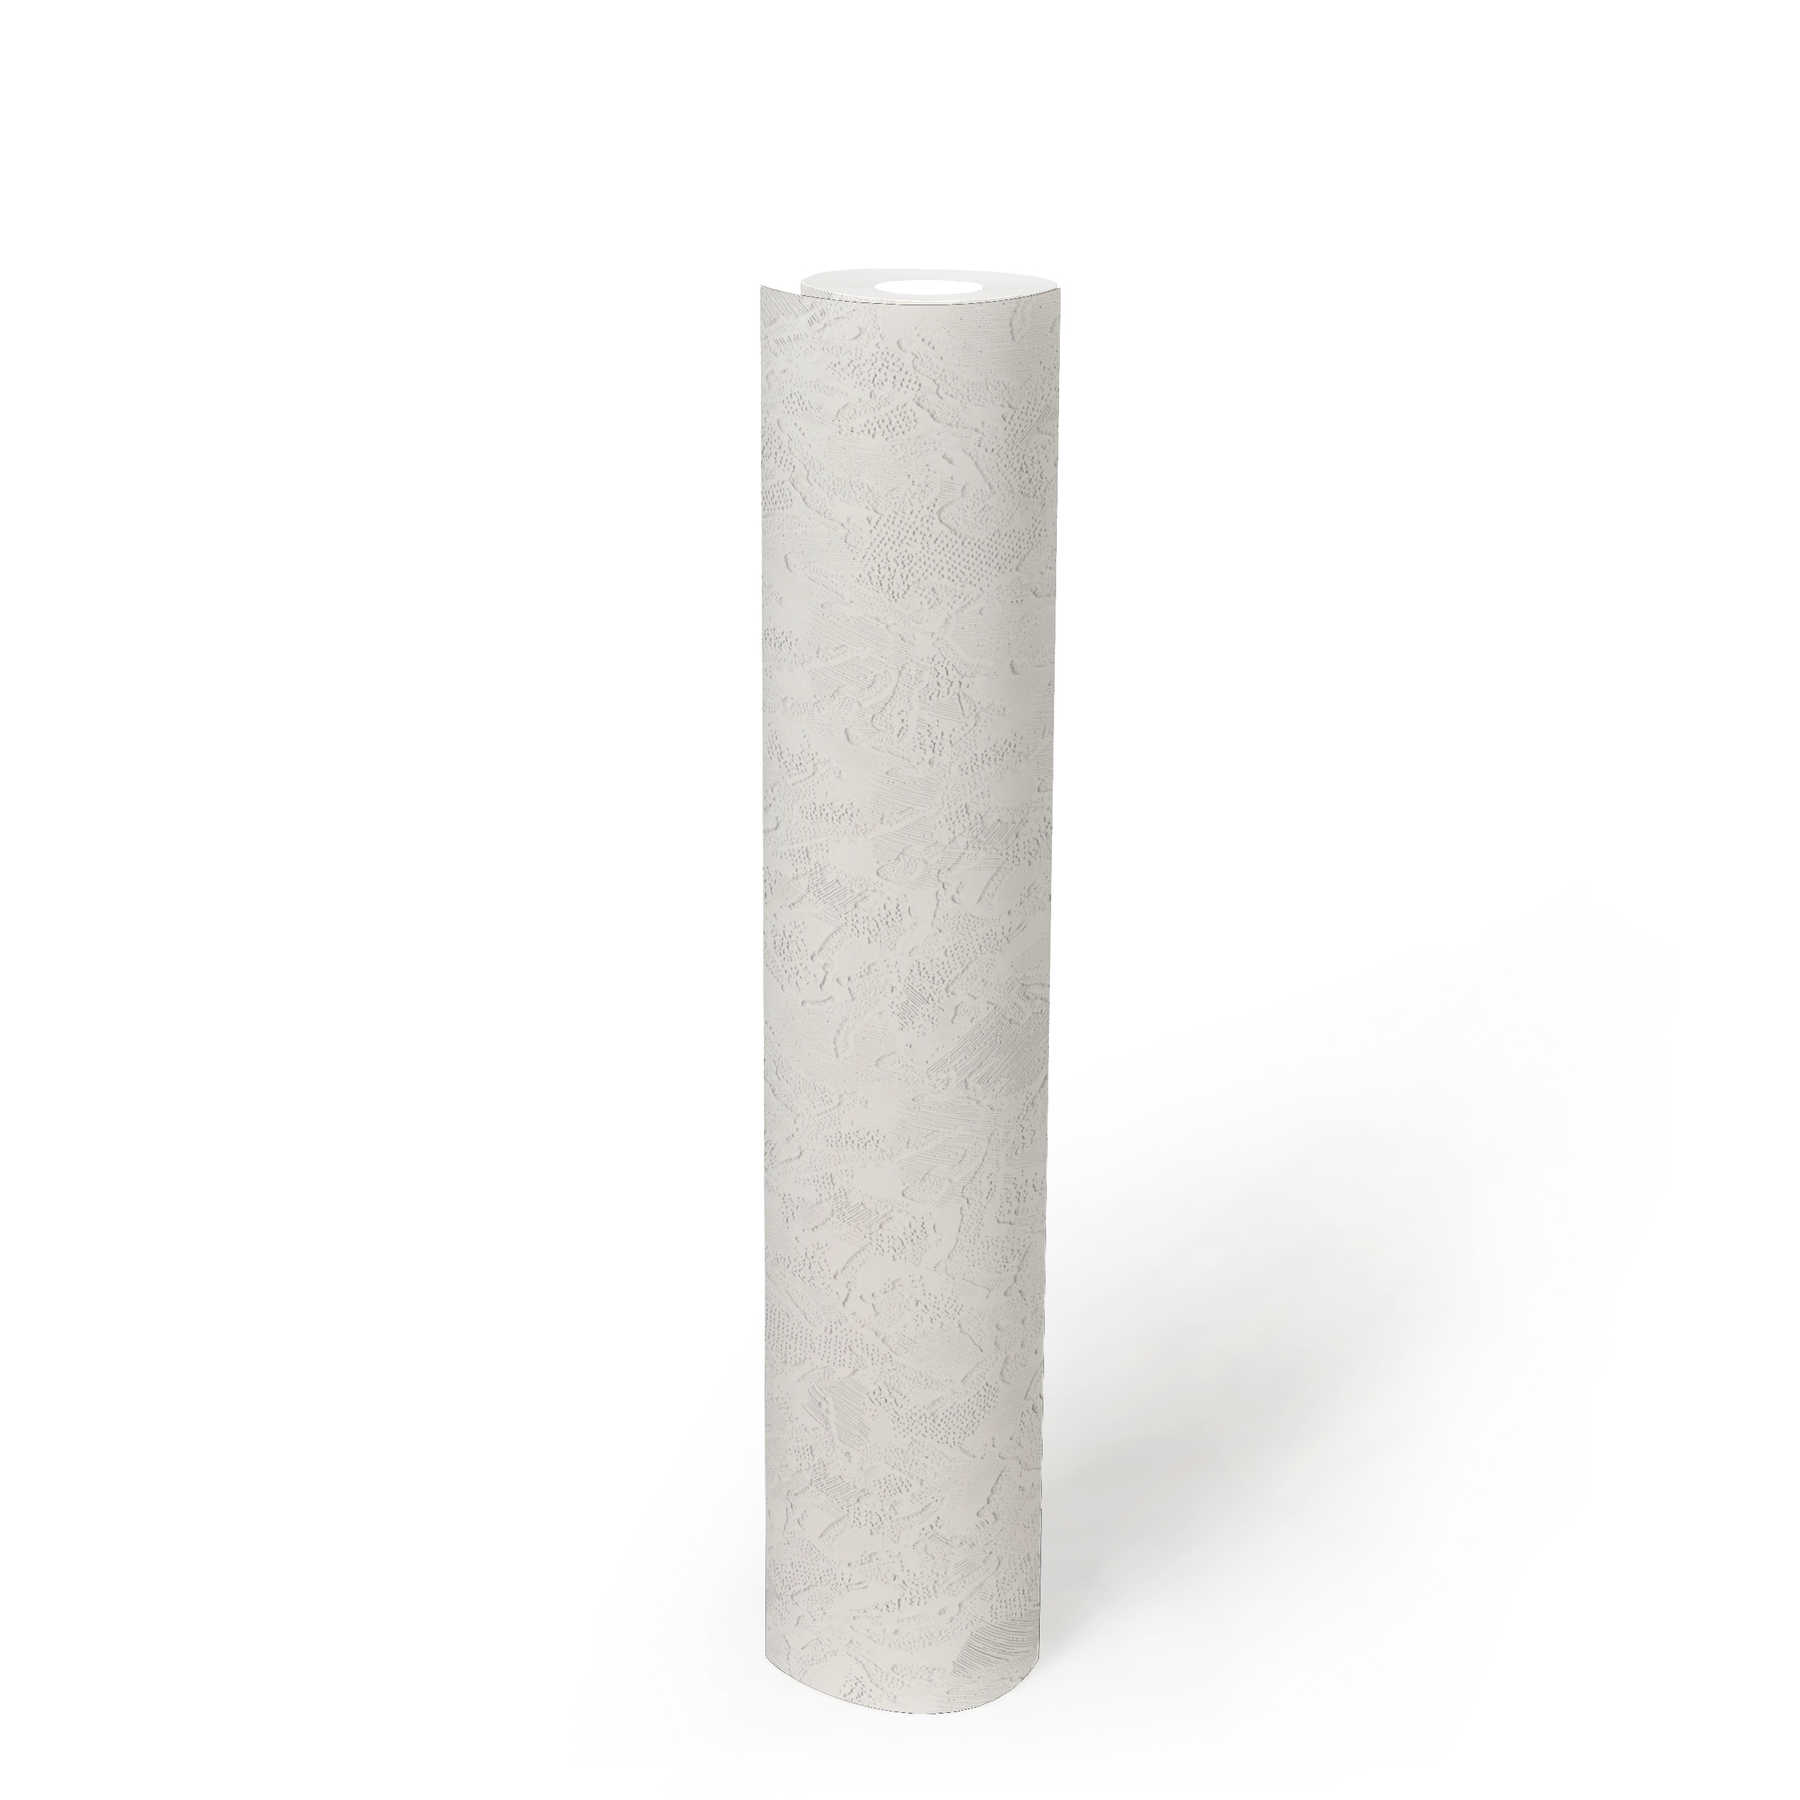             Gipsachtig behang met bedrieglijk gestructureerd oppervlak - wit
        